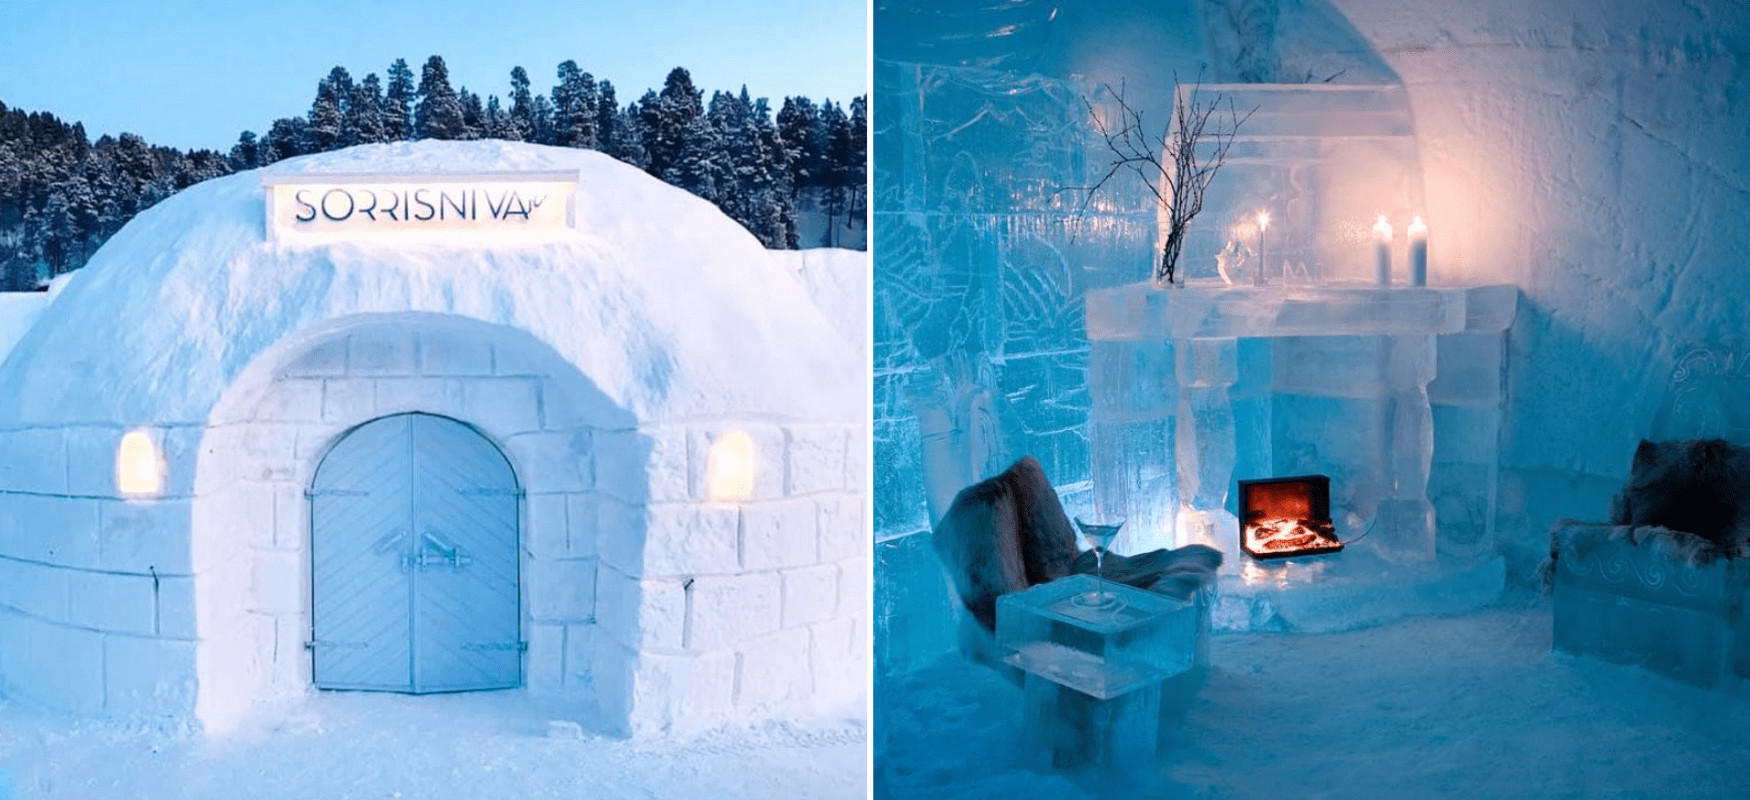 Das Sorrisniva Igloo Hotel ist das höchstgelegene Eishotel der Welt